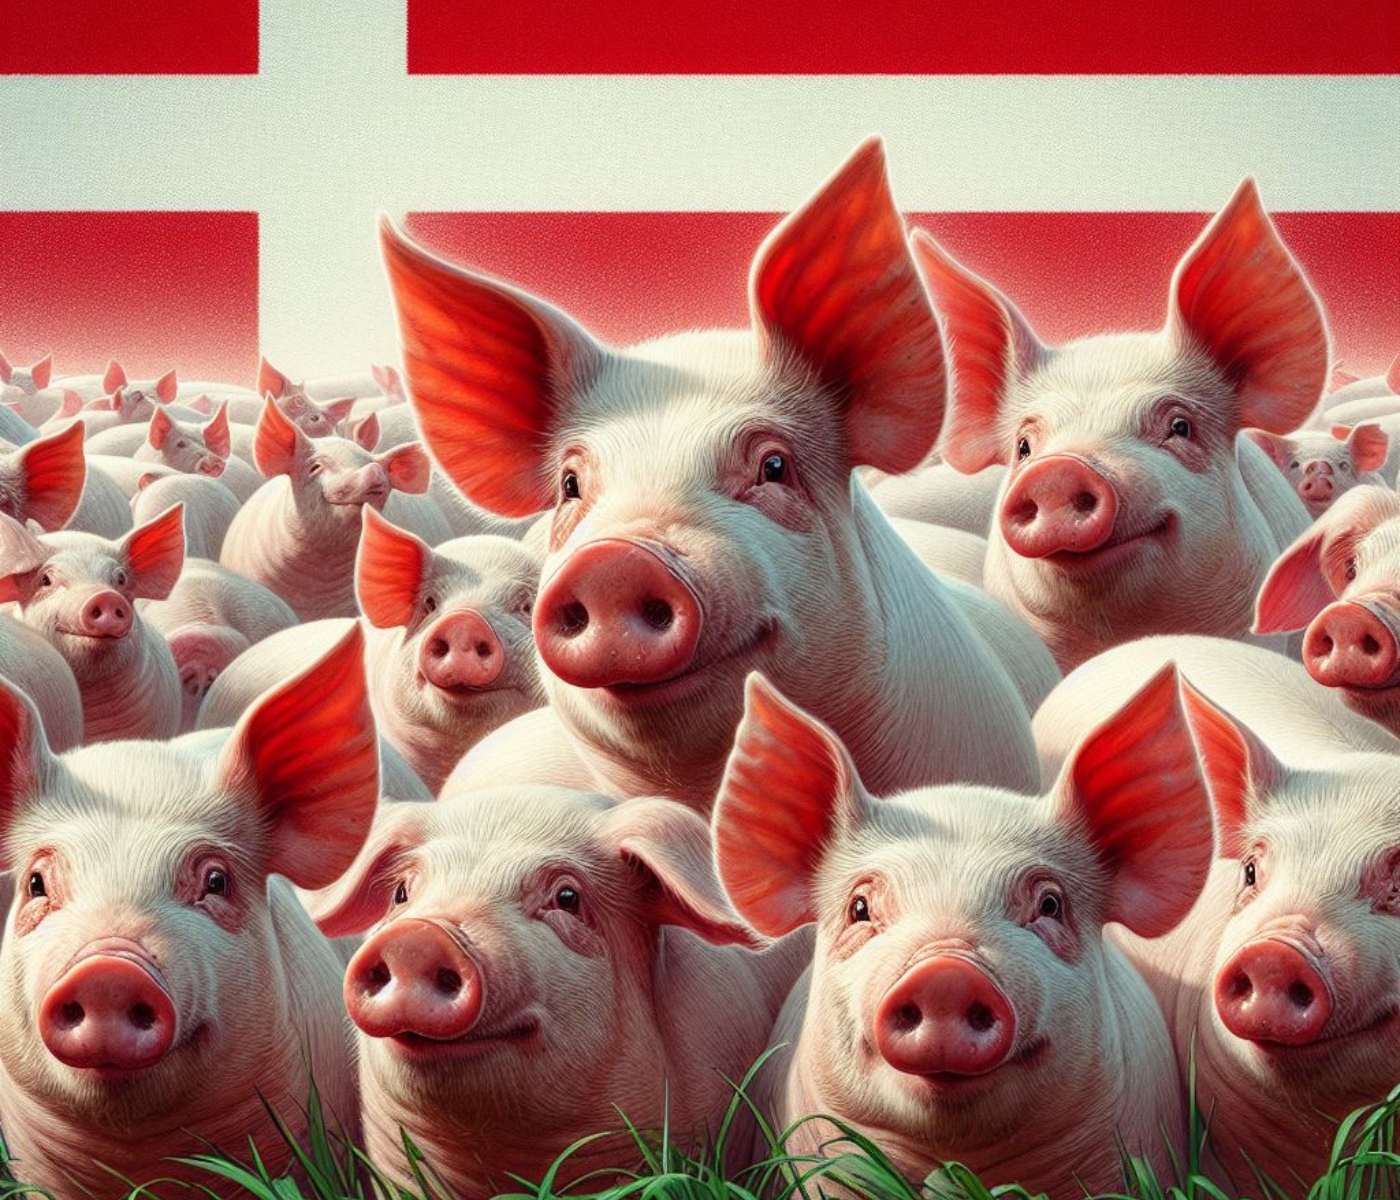 Dinamarca: El censo de cerdos entra en una nueva fase de expansión